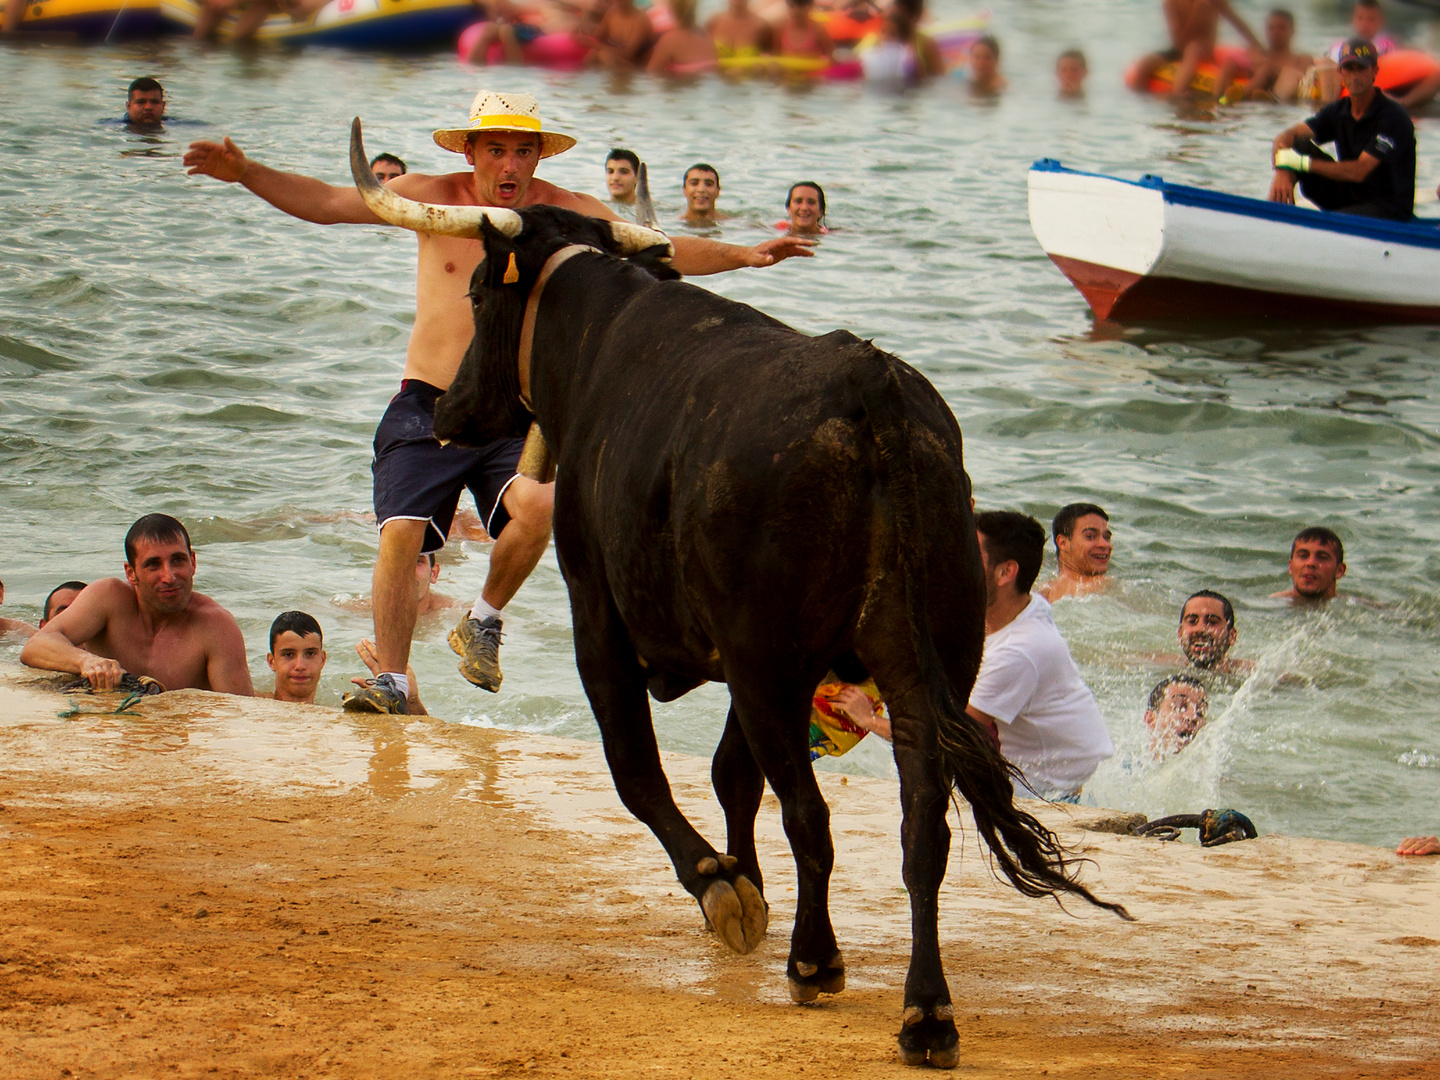 Beachlife einmal anders: Wer den Stier reizt, muss manchmal unfreiwillig baden